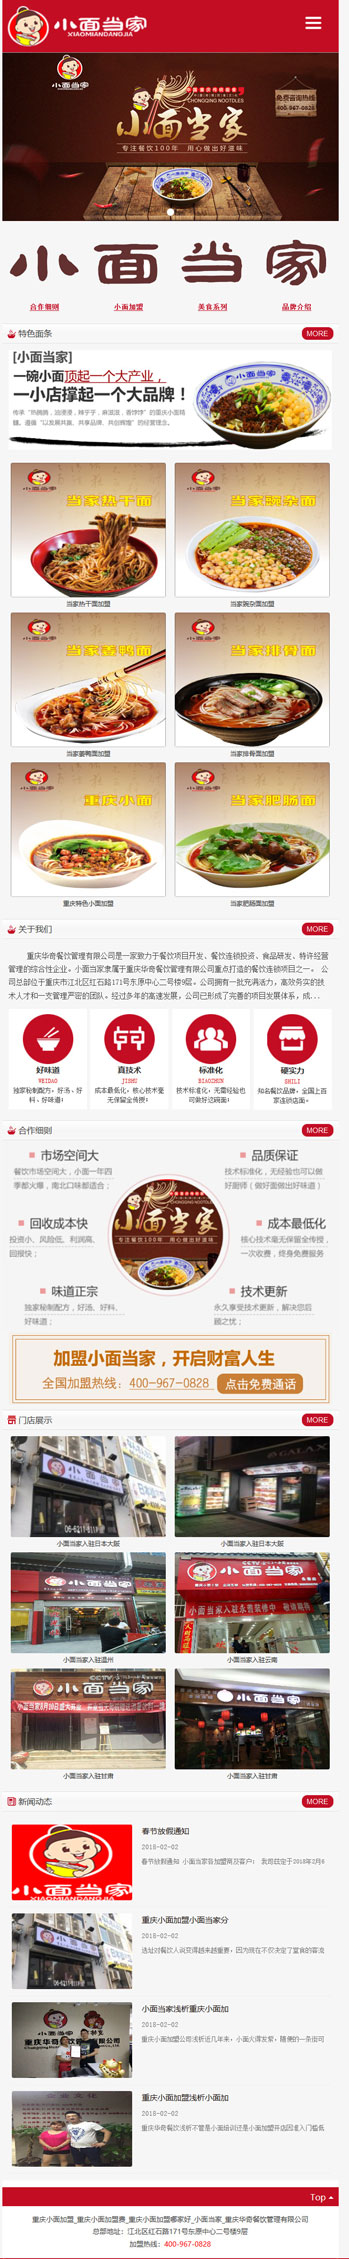 重庆小面当家加盟公司网站建设案例